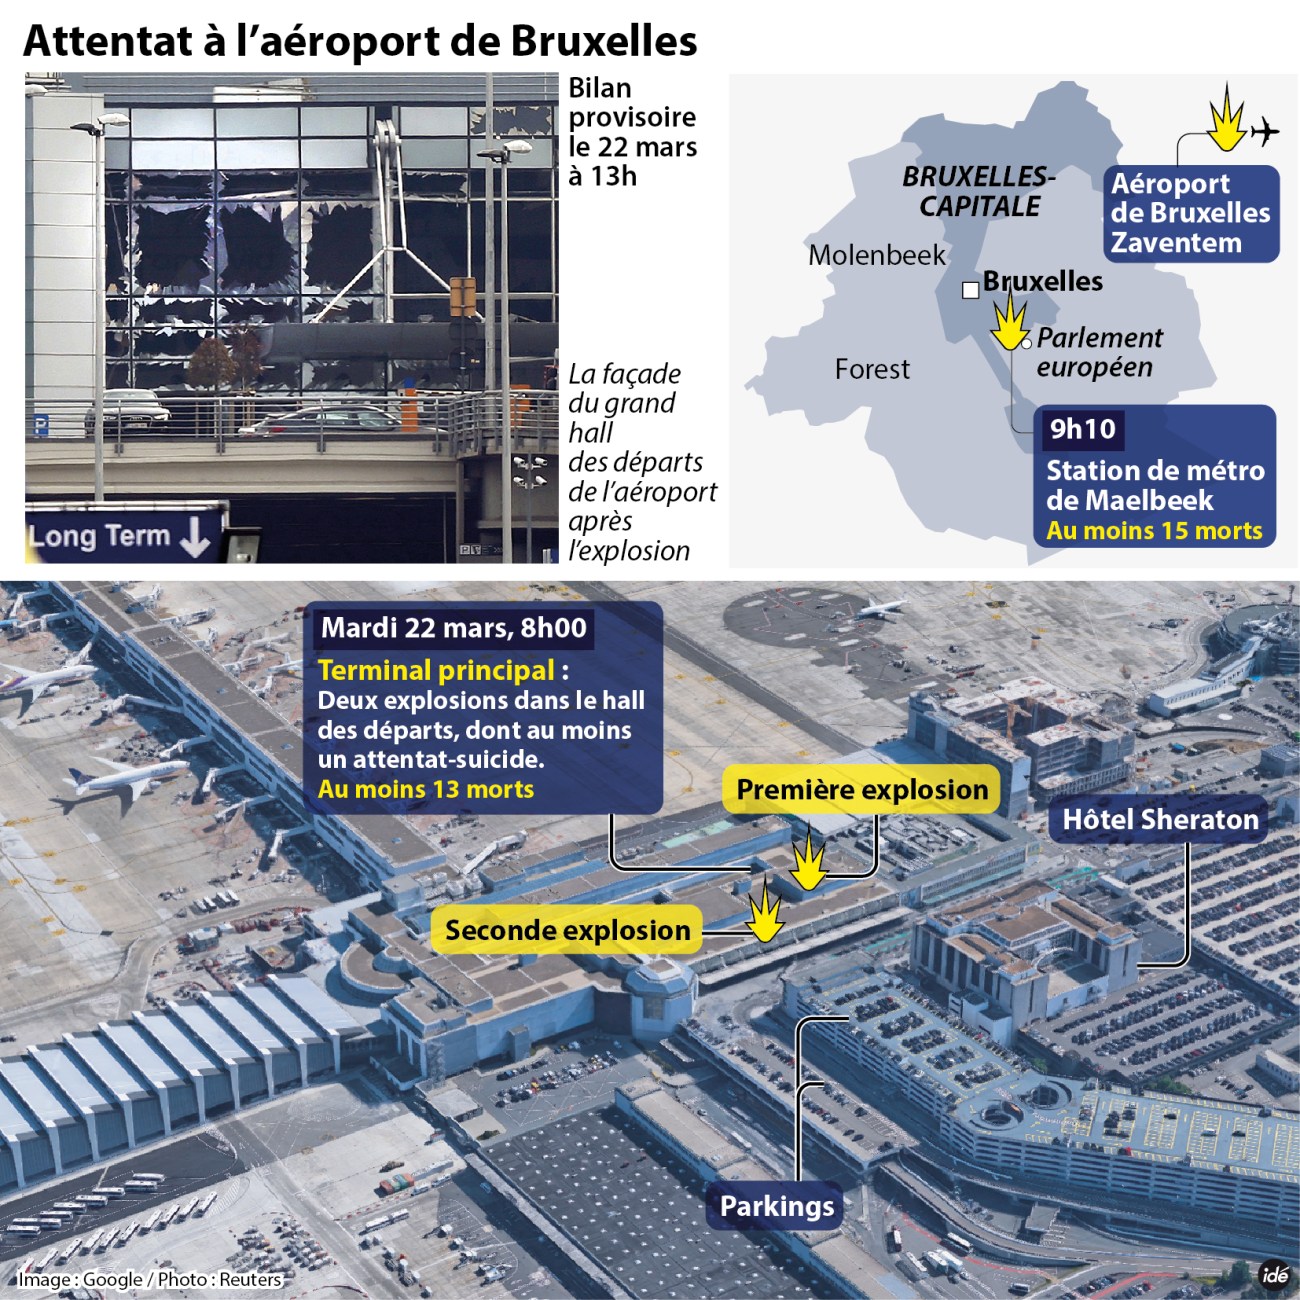 Infographie attentats Belgique